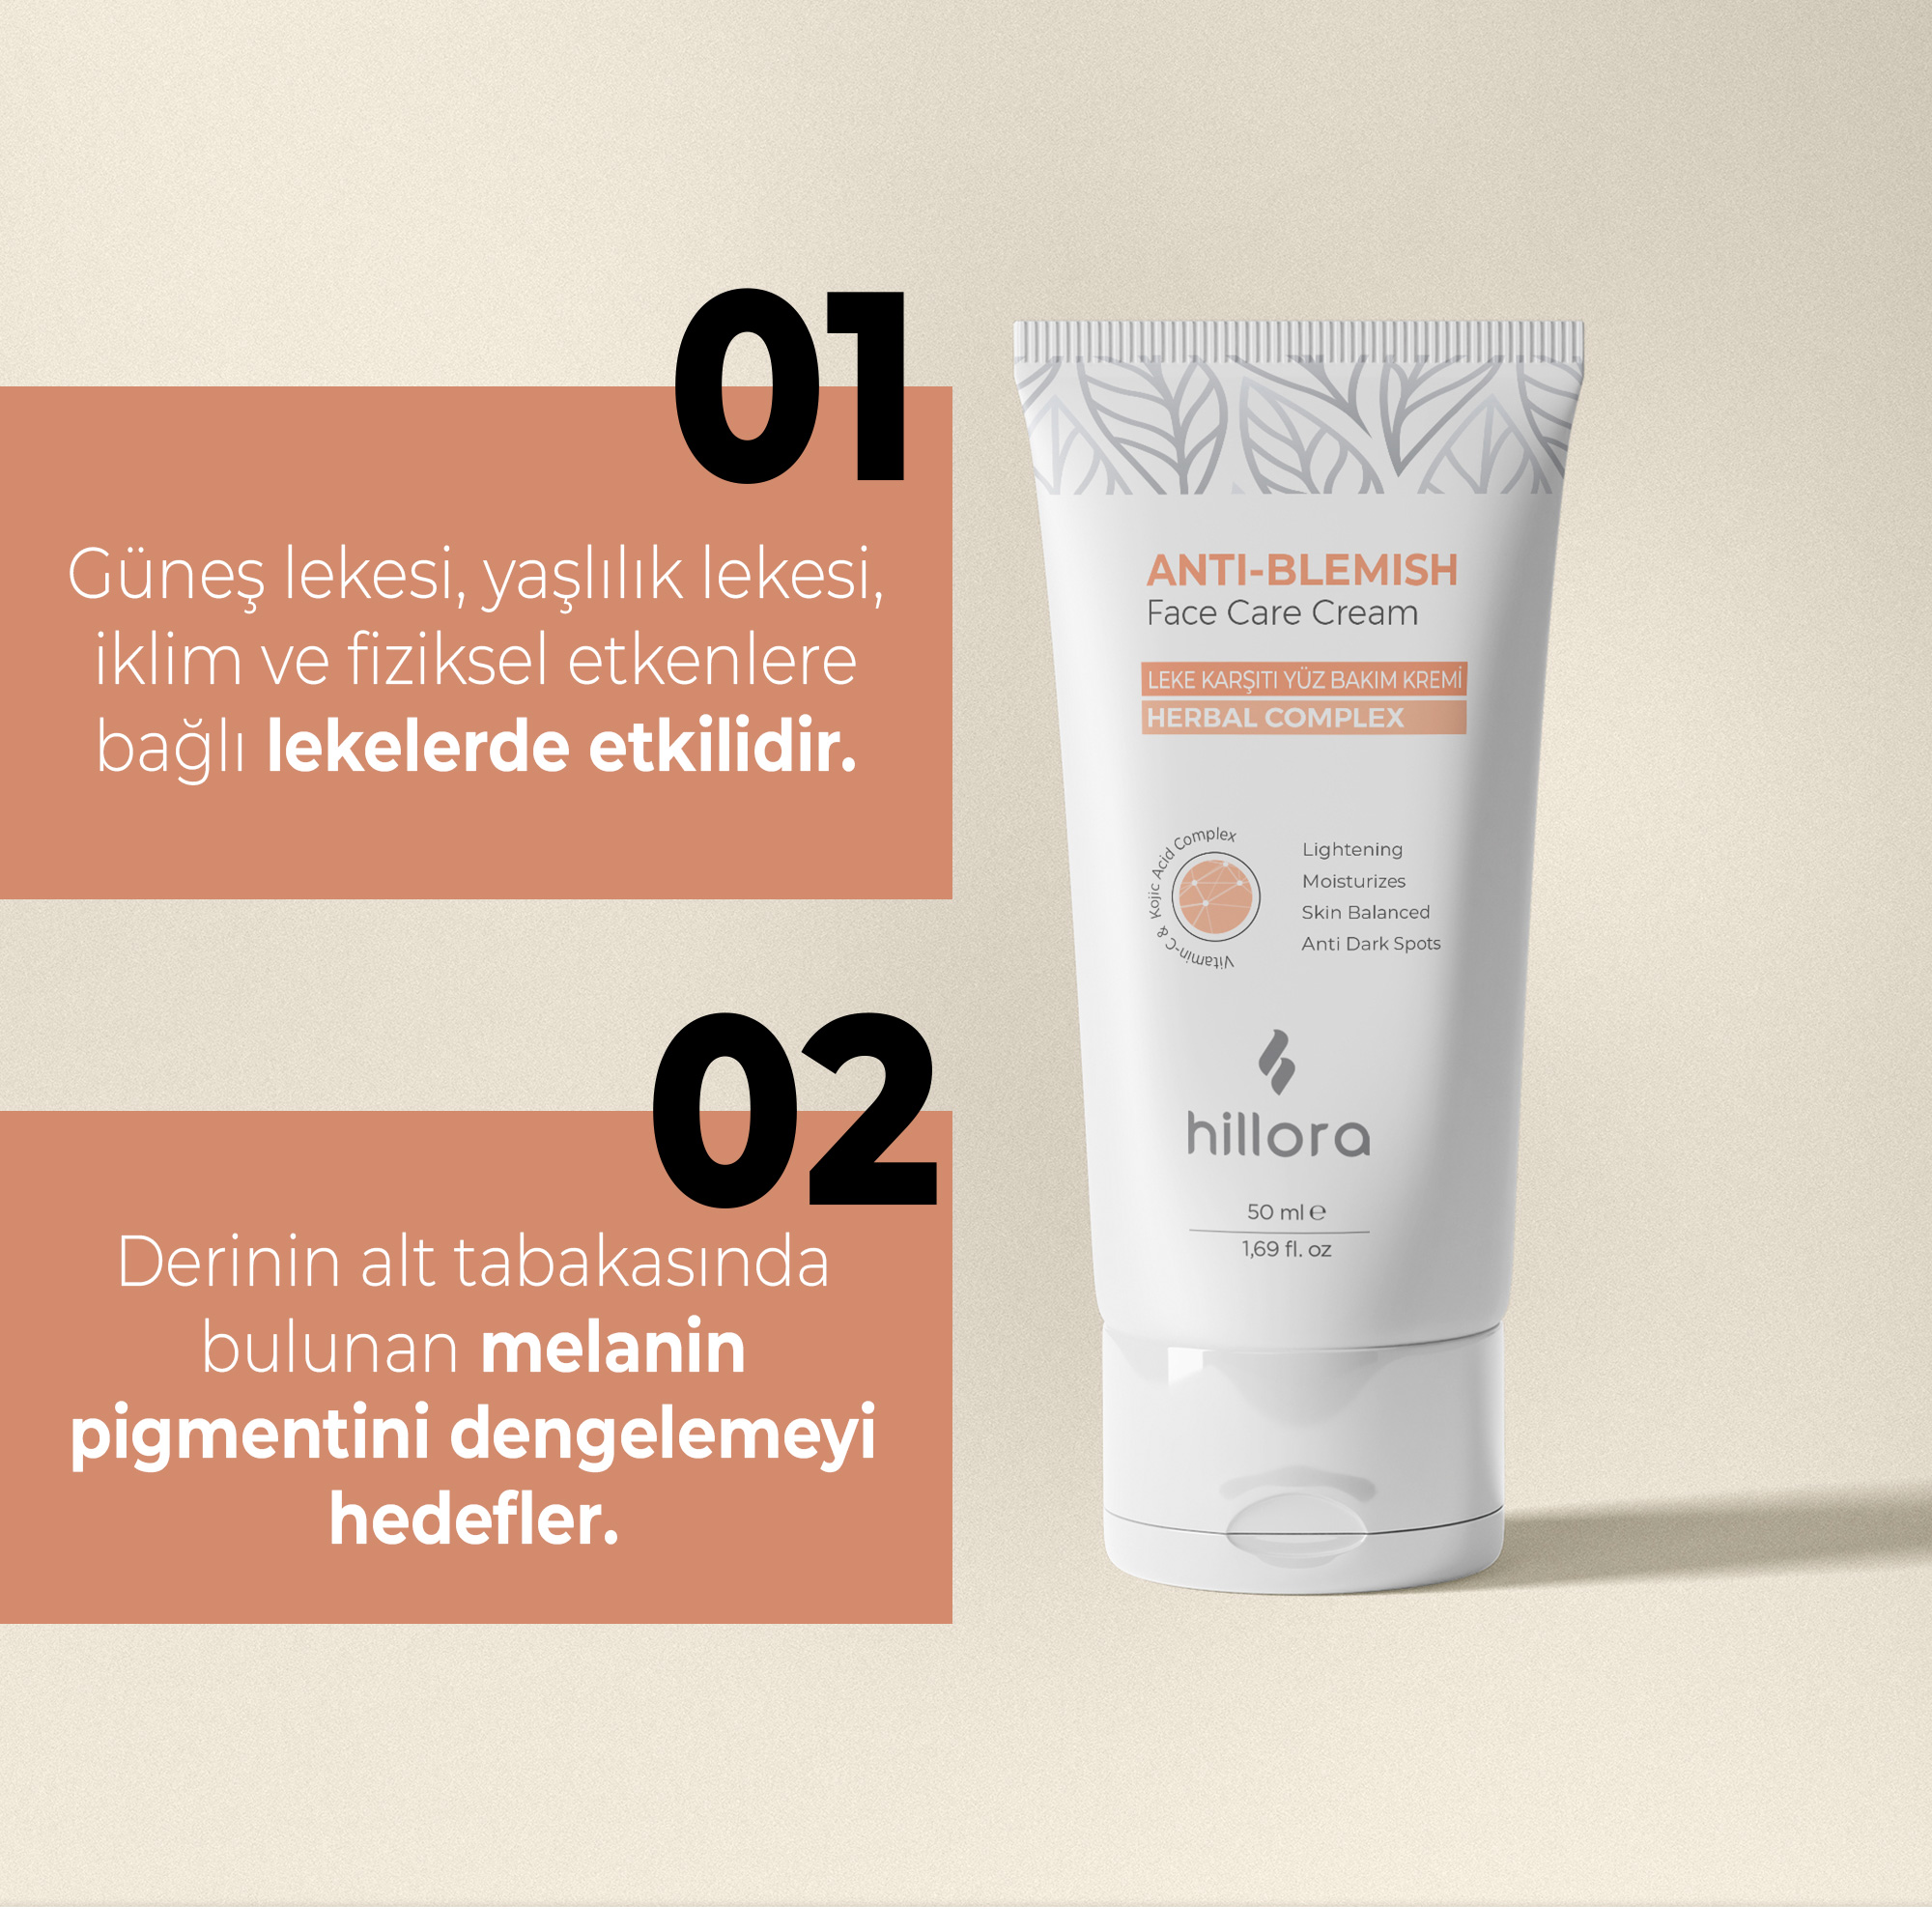 Hillora Anti Blemish Face Care Cream